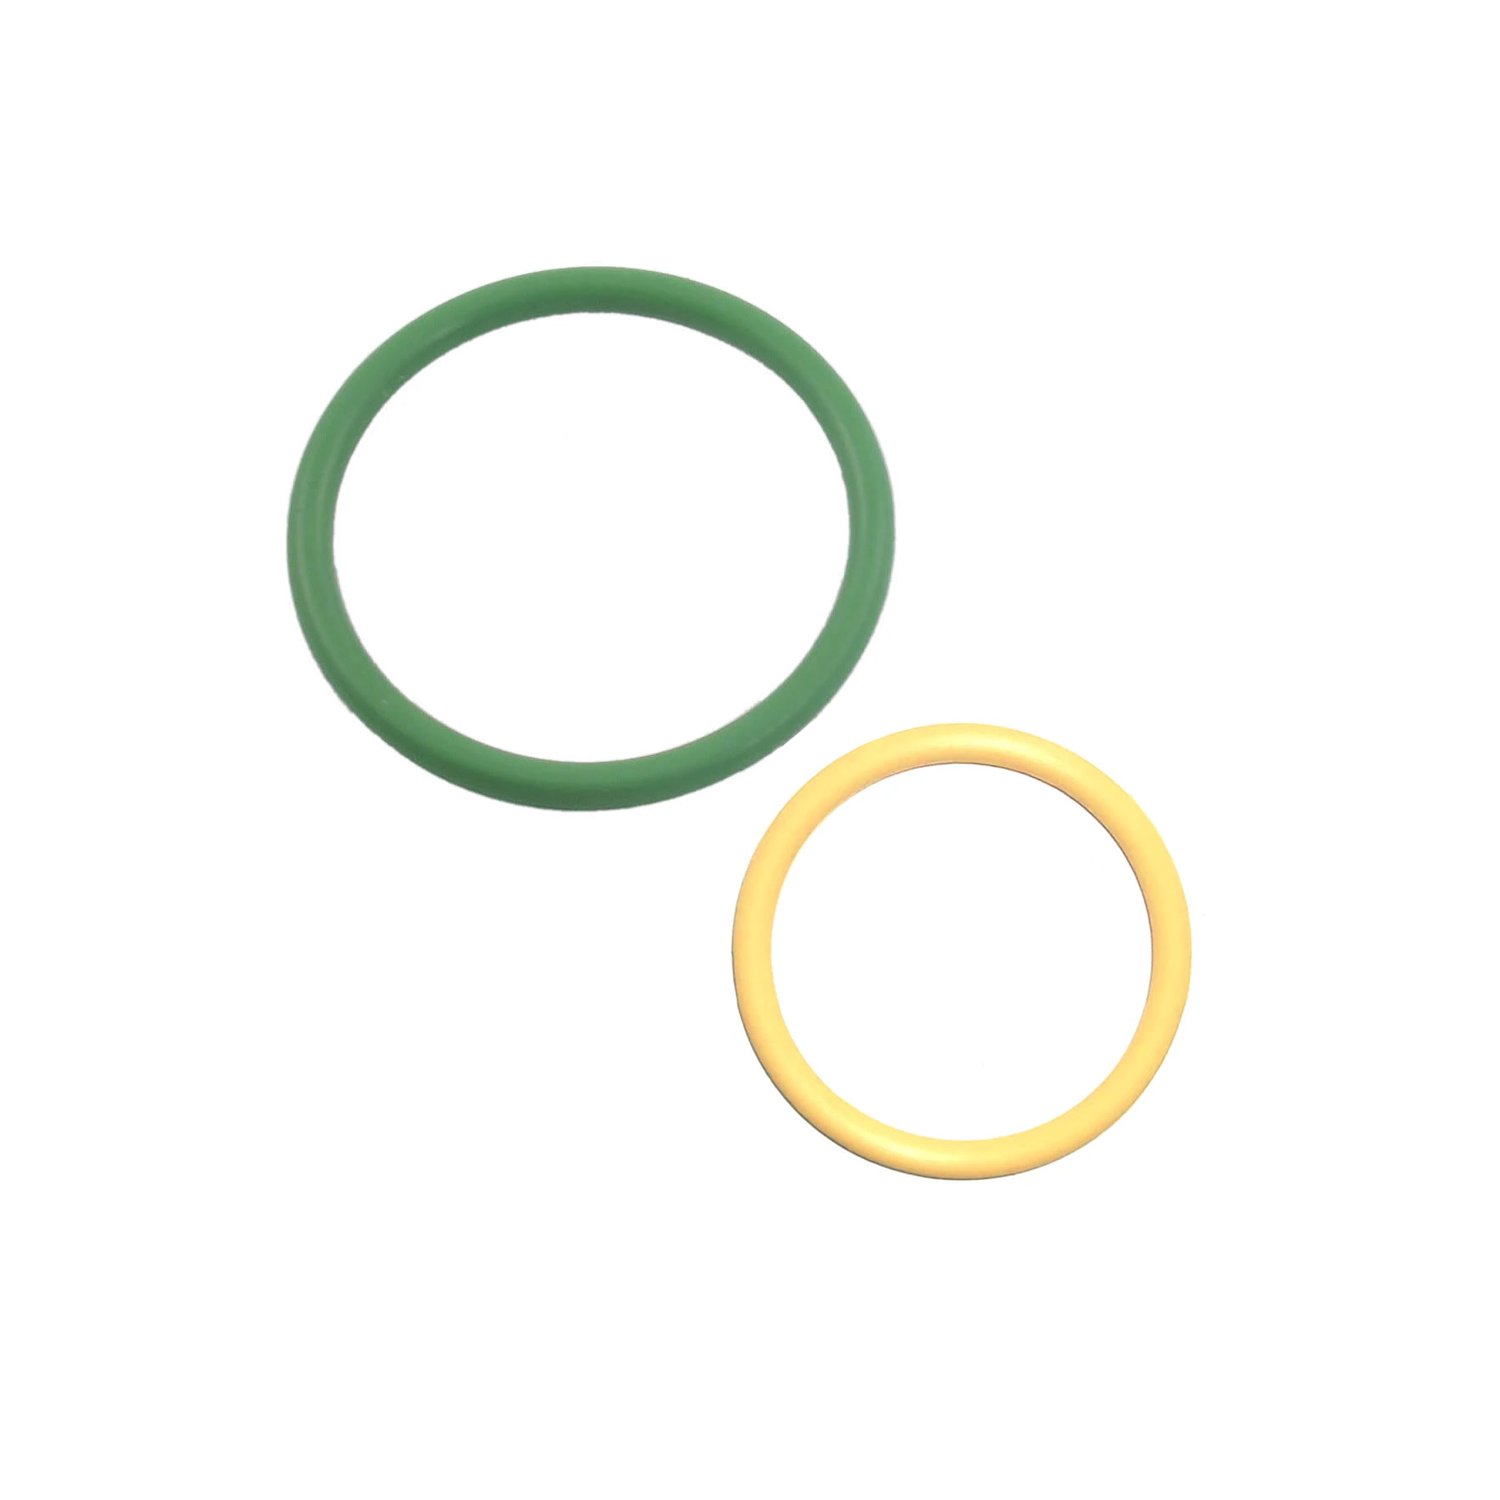 O-ringi 8.0 x 2.0 mm 1 szt. z gumy HNBR, do klimatyzatorów R12 i R134a